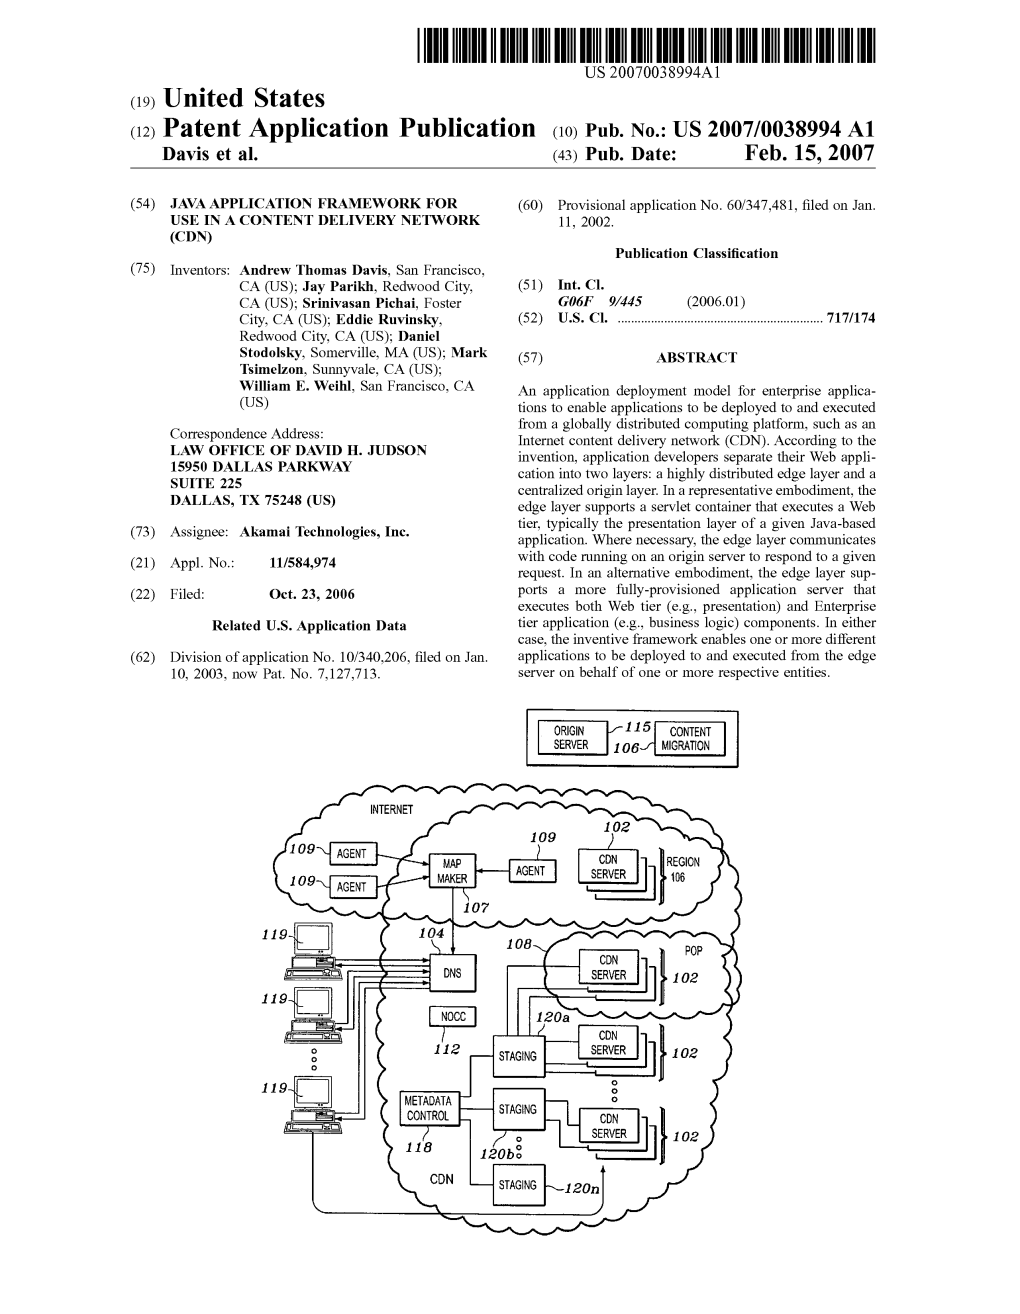 (12) Patent Application Publication (10) Pub. No.: US 2007/0038994 A1 Davis Et Al